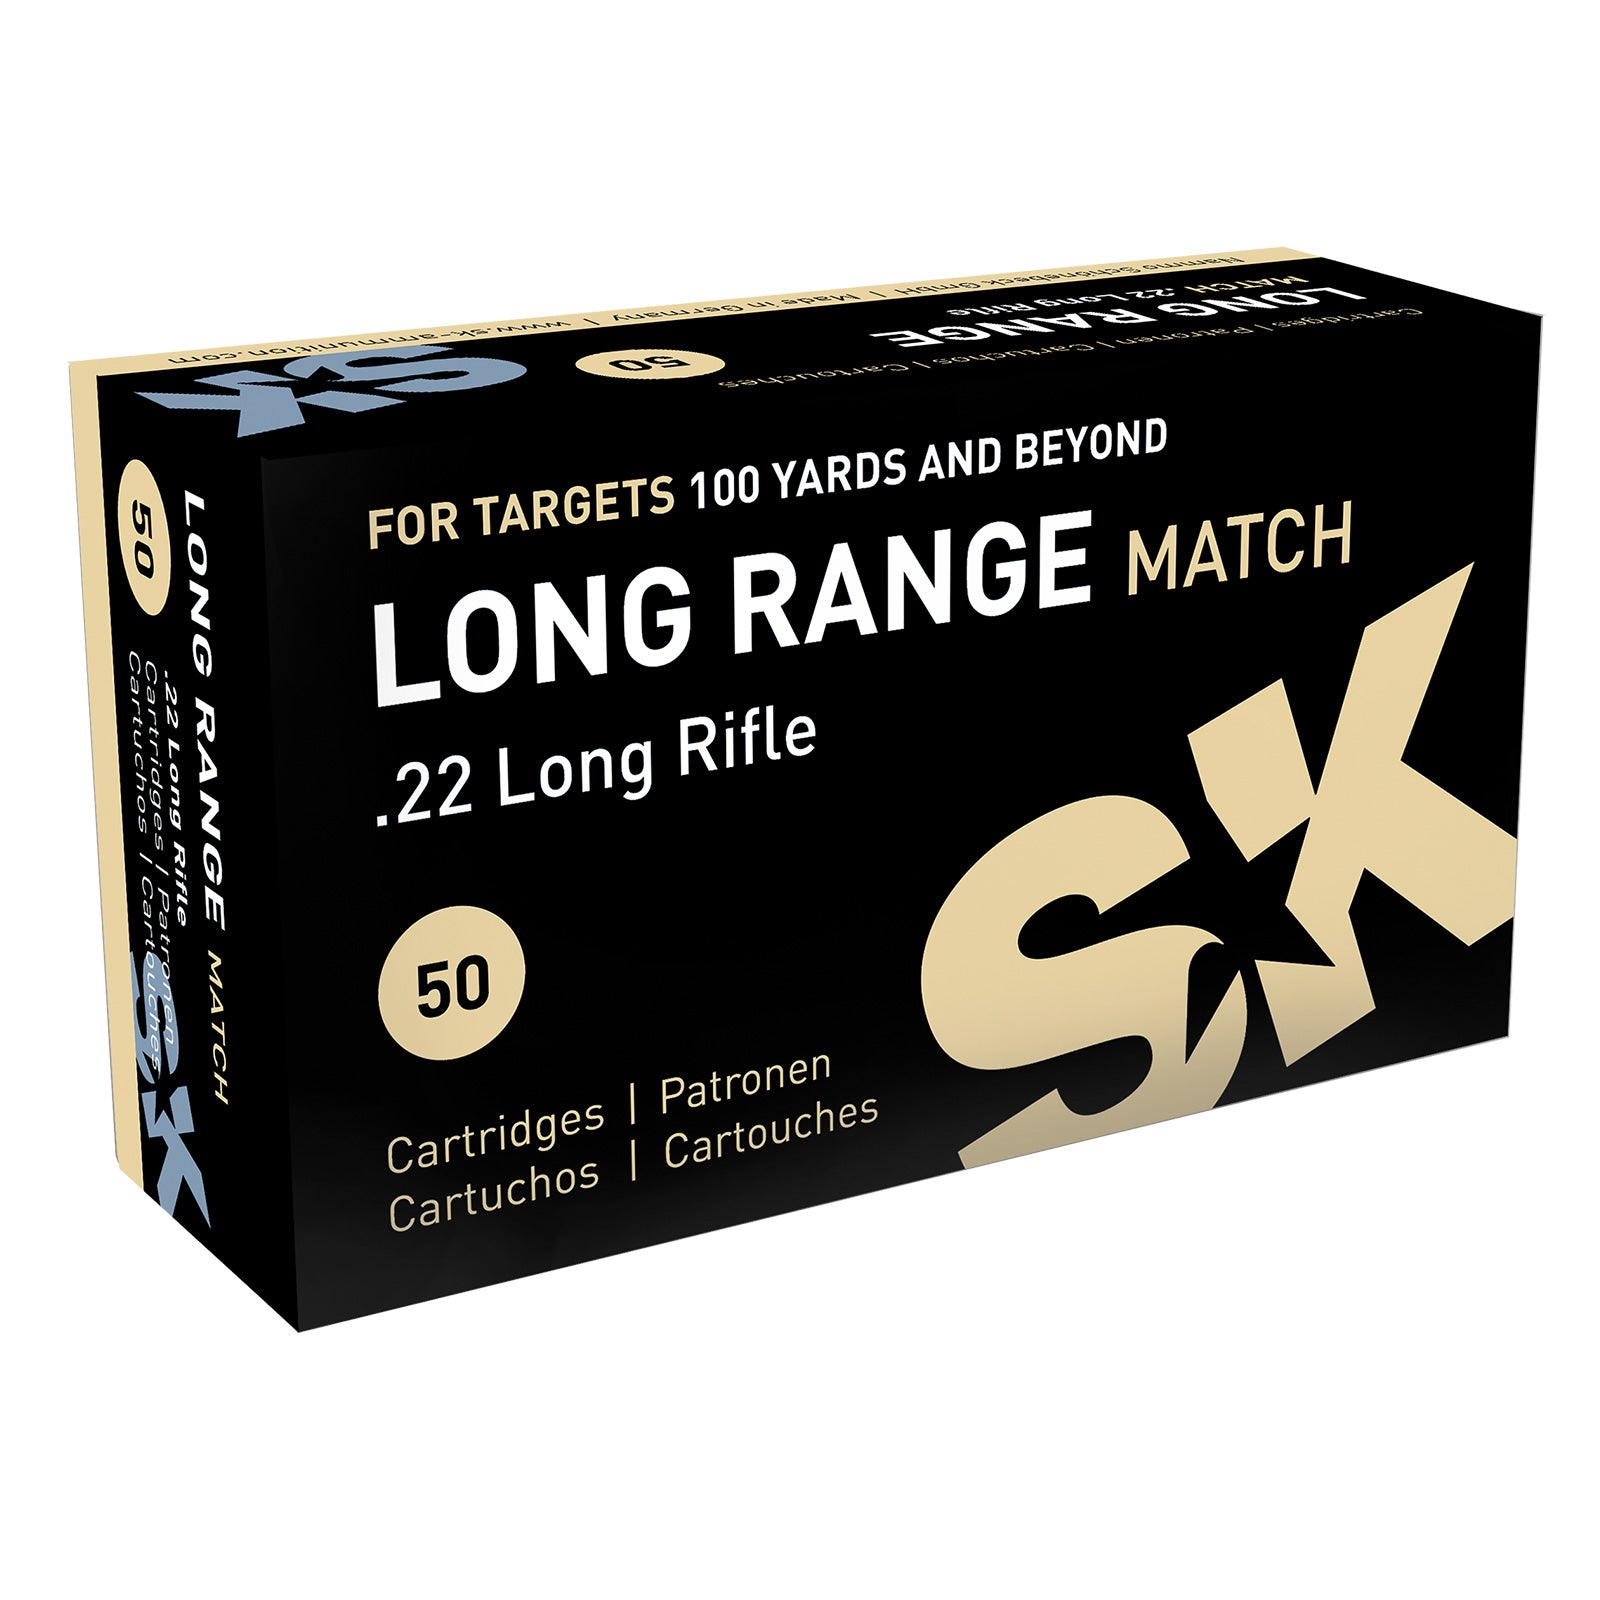 SK Long Range 22LR Rifle Ammunition Bullets SALE LIMITED TIME